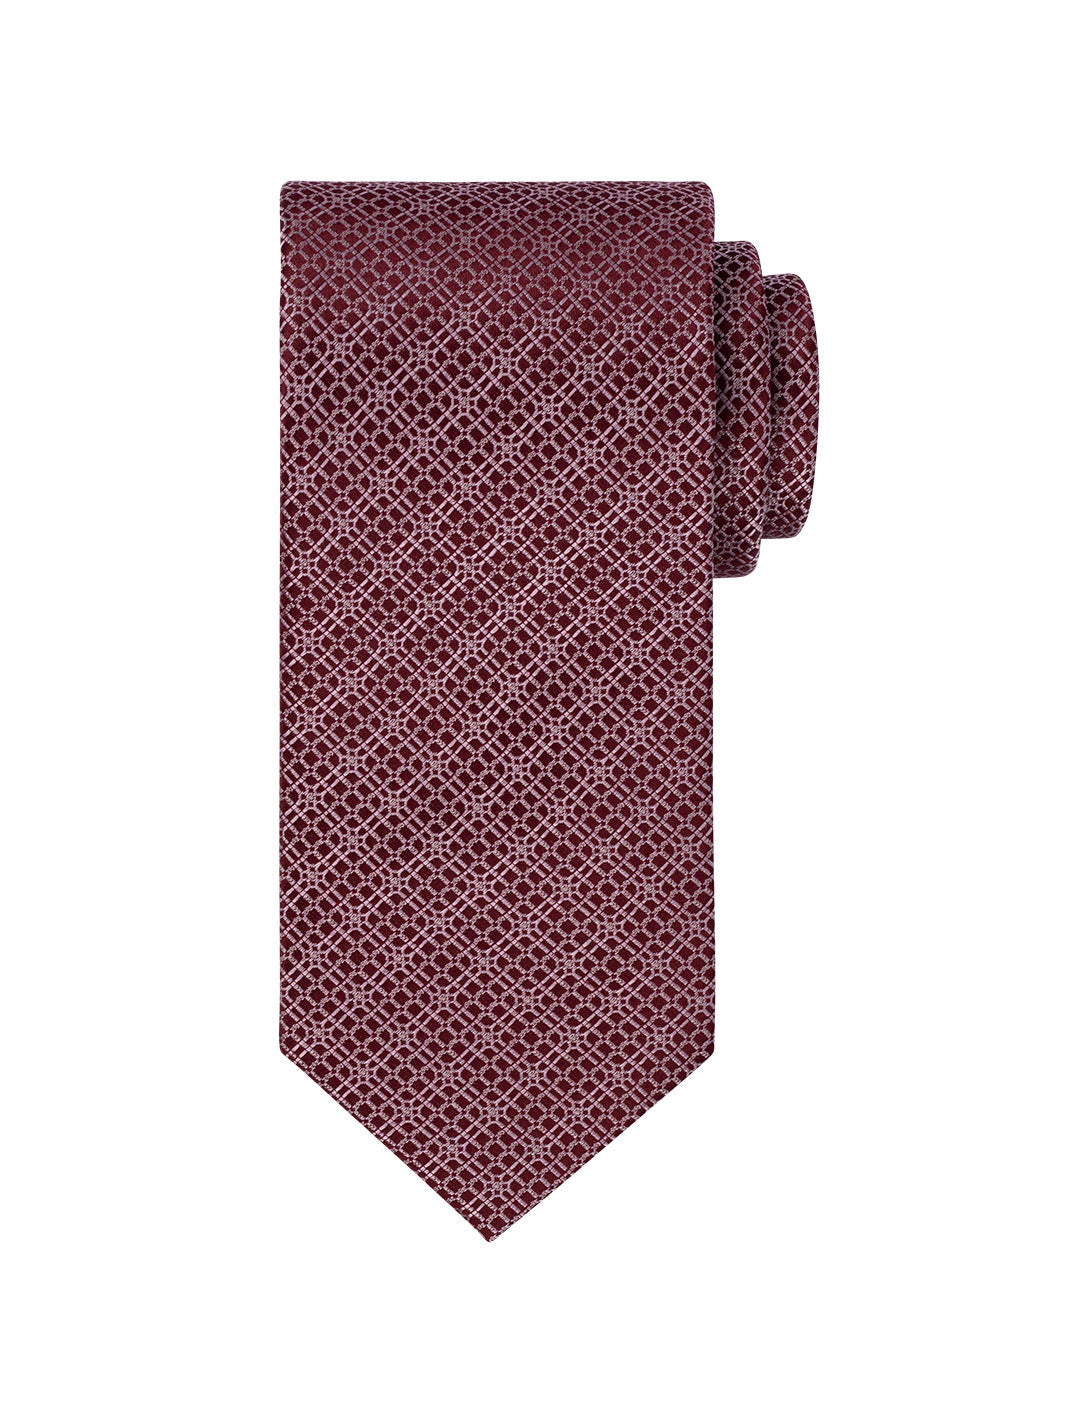 Men's Titanium Mosaic Tie